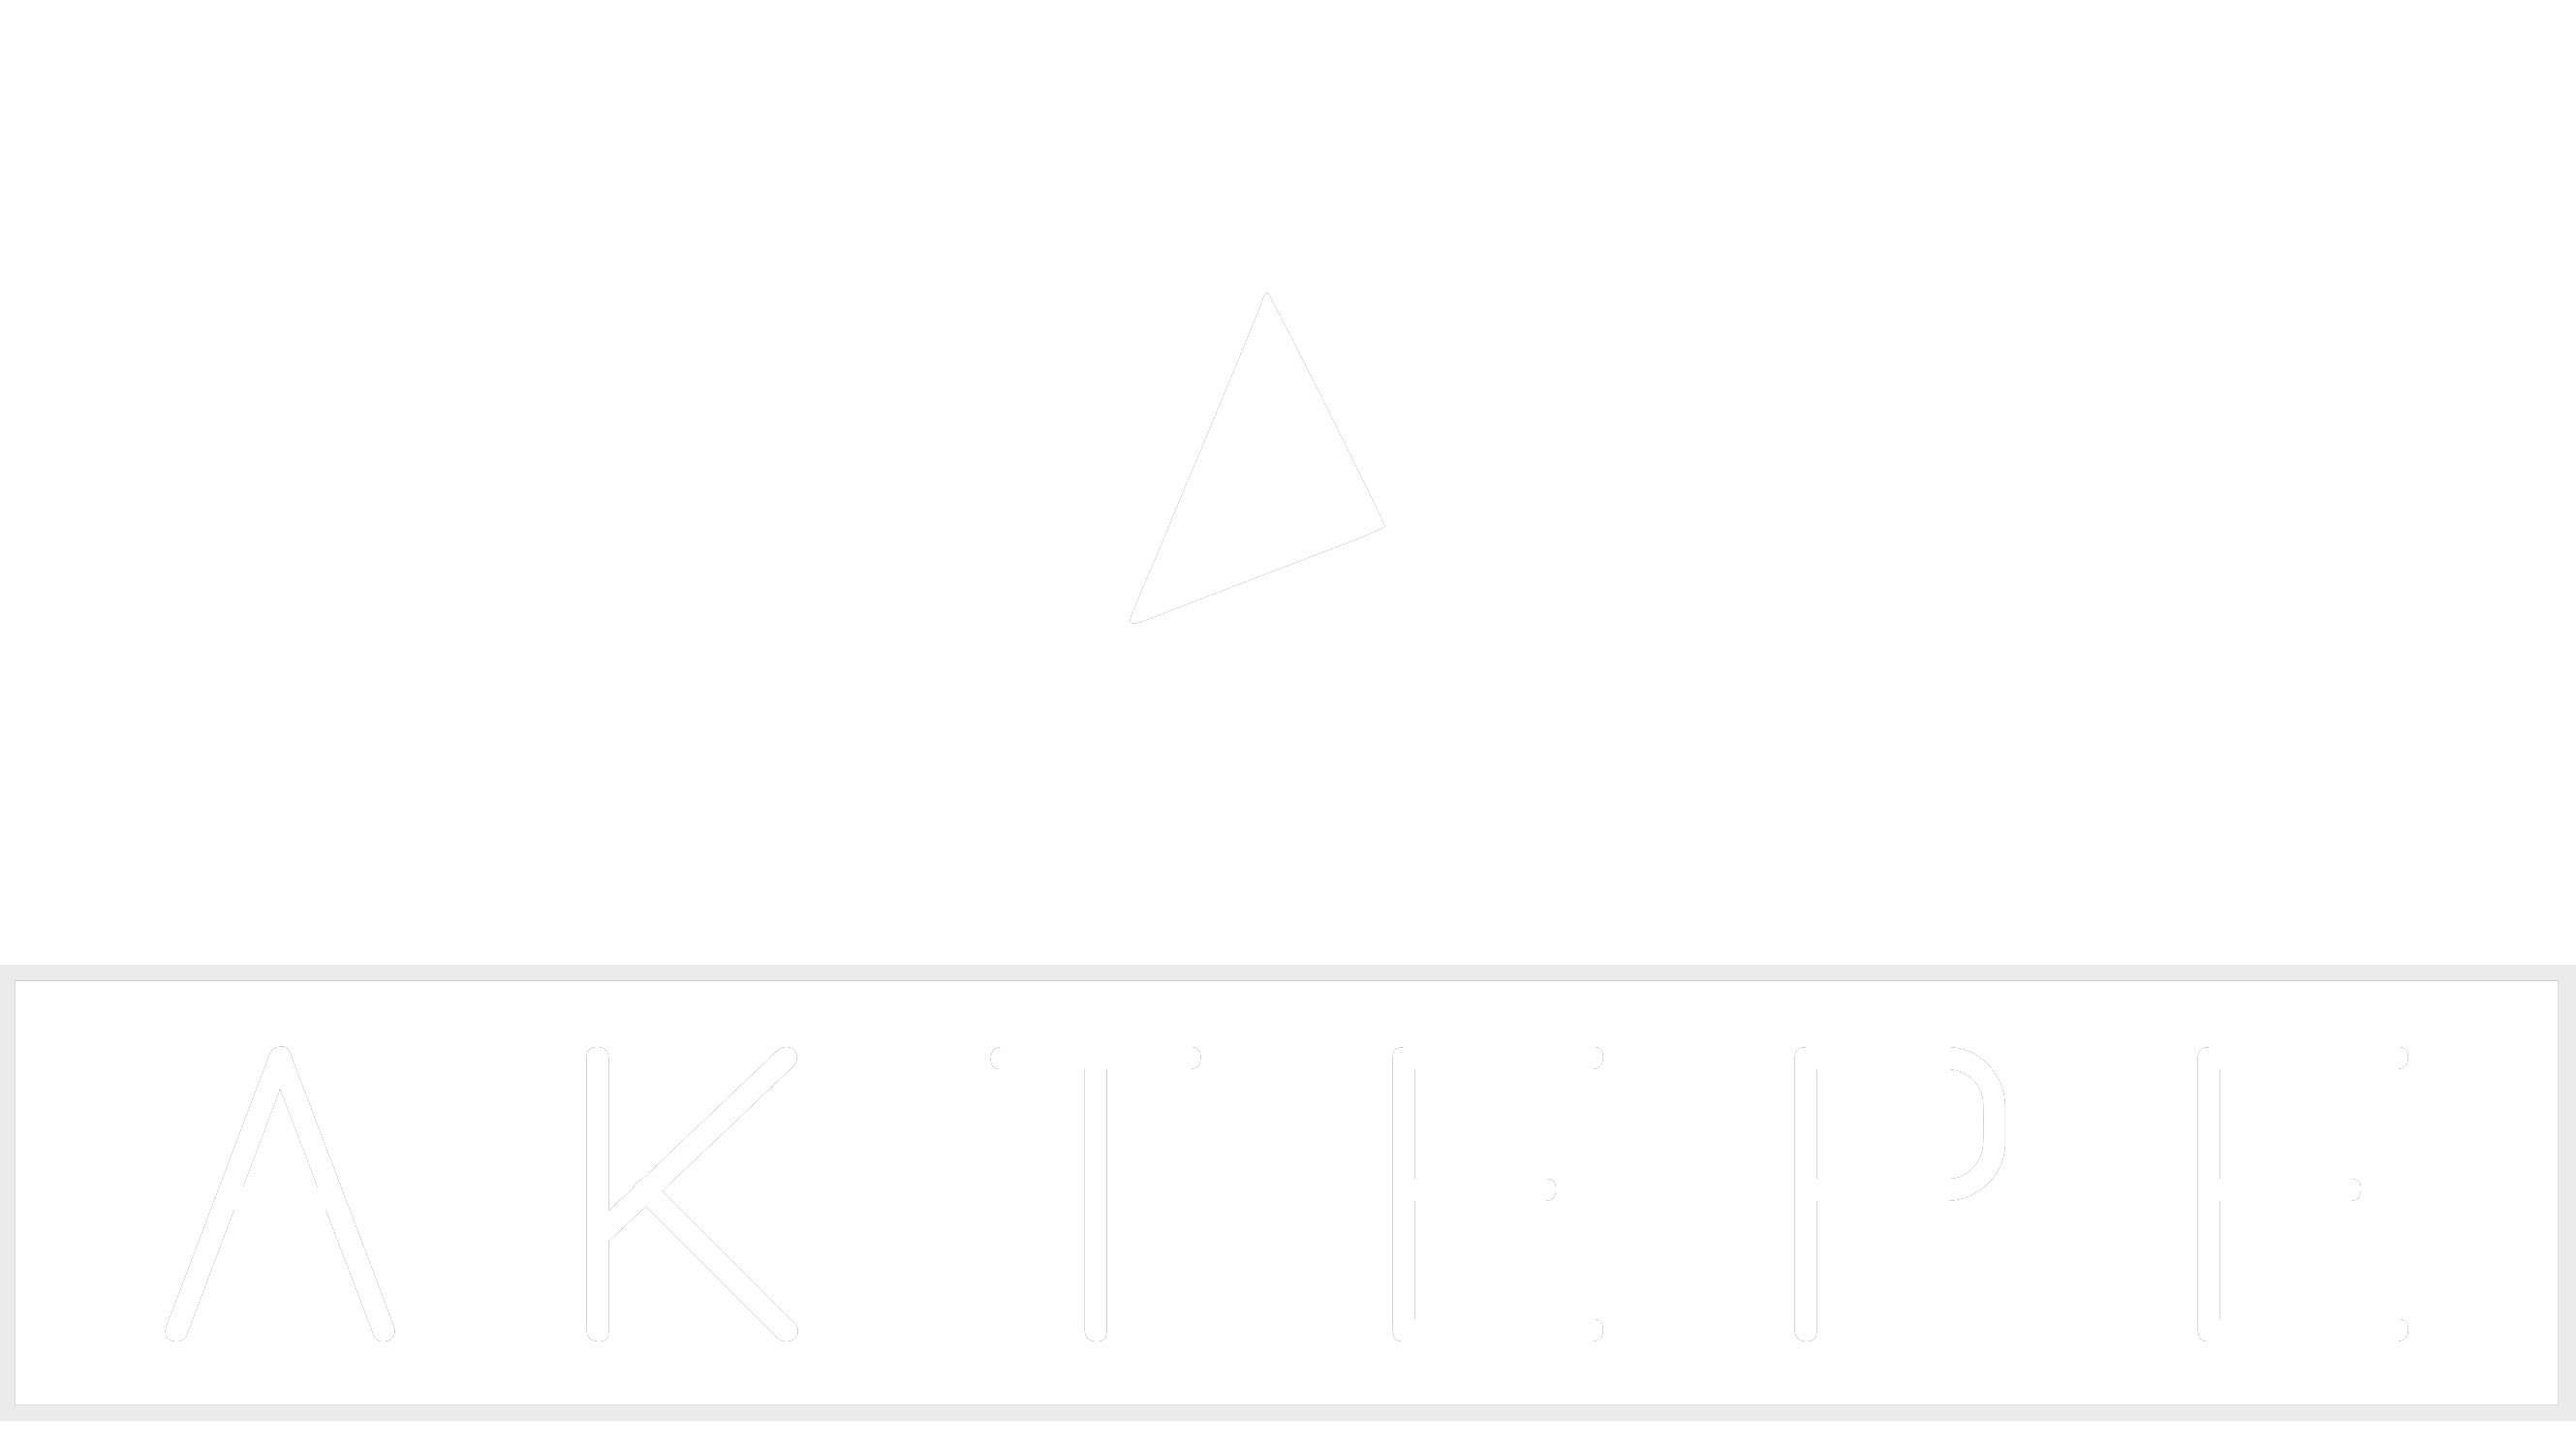 Opel - Aktepe Shop - Oto Müzik Görüntü Navigasyon Sistemleri ve Teyp Çerçevesi Satış Merkezi